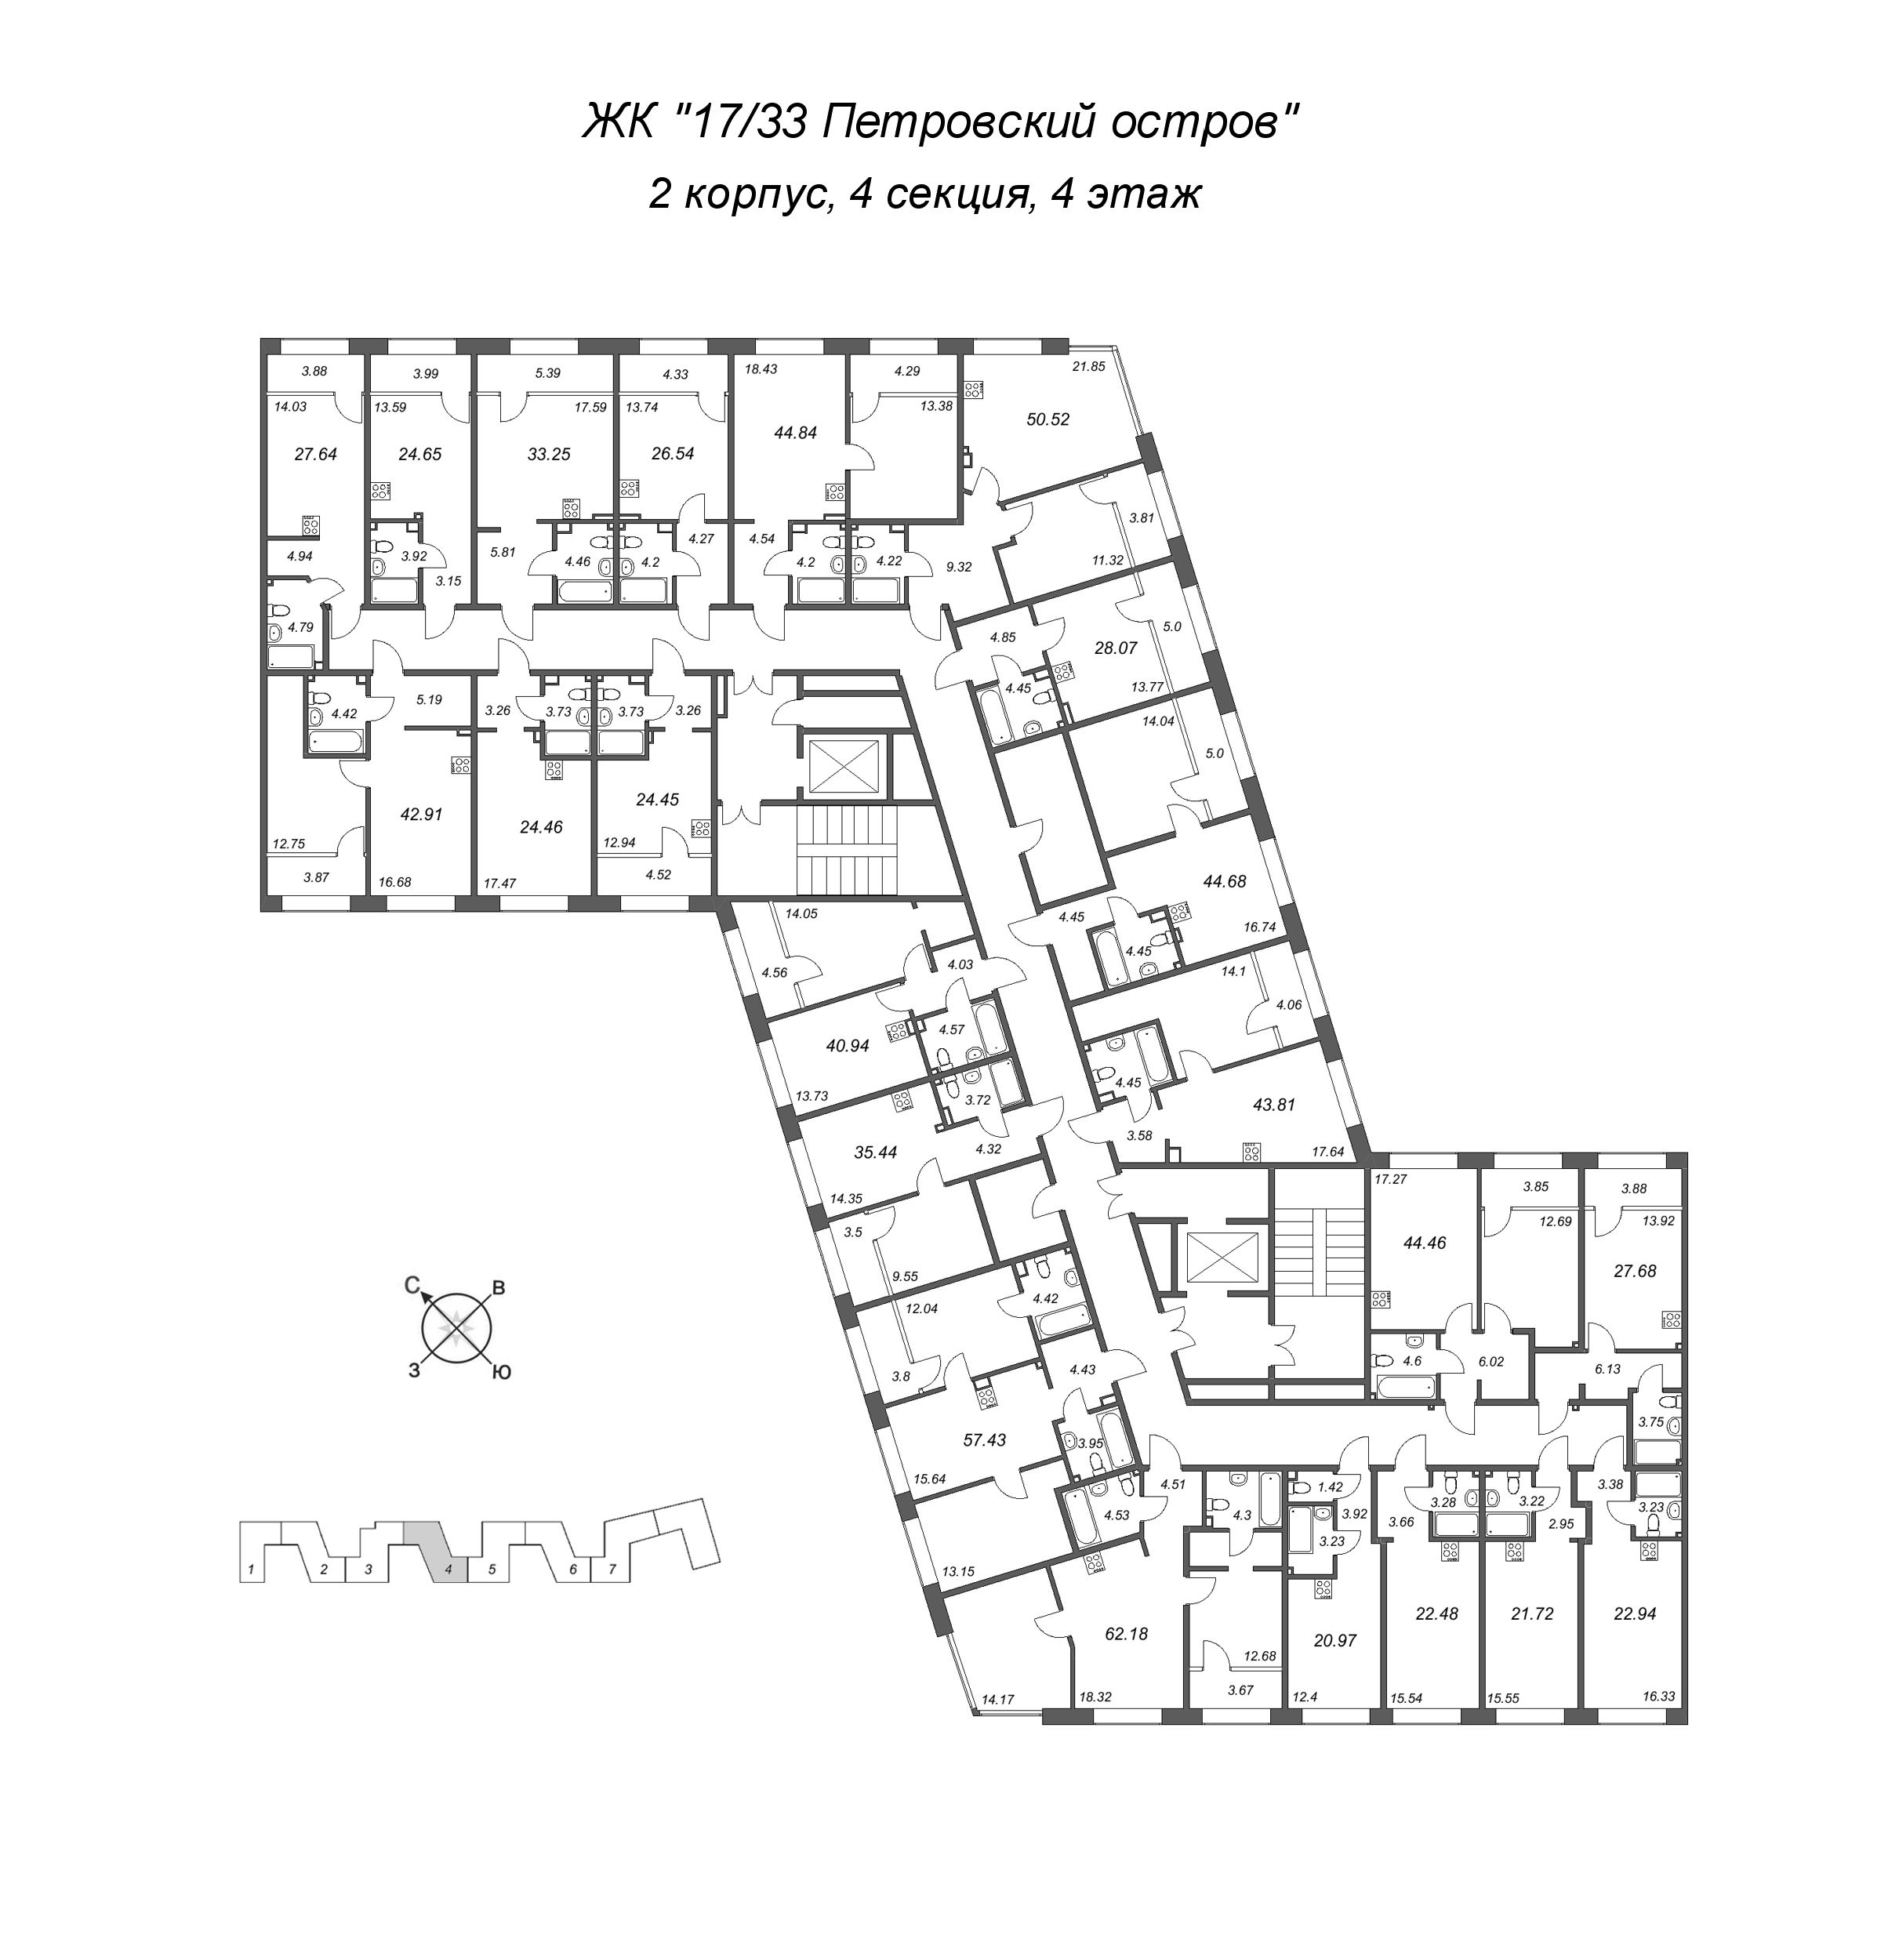 Квартира-студия, 24.65 м² в ЖК "17/33 Петровский остров" - планировка этажа